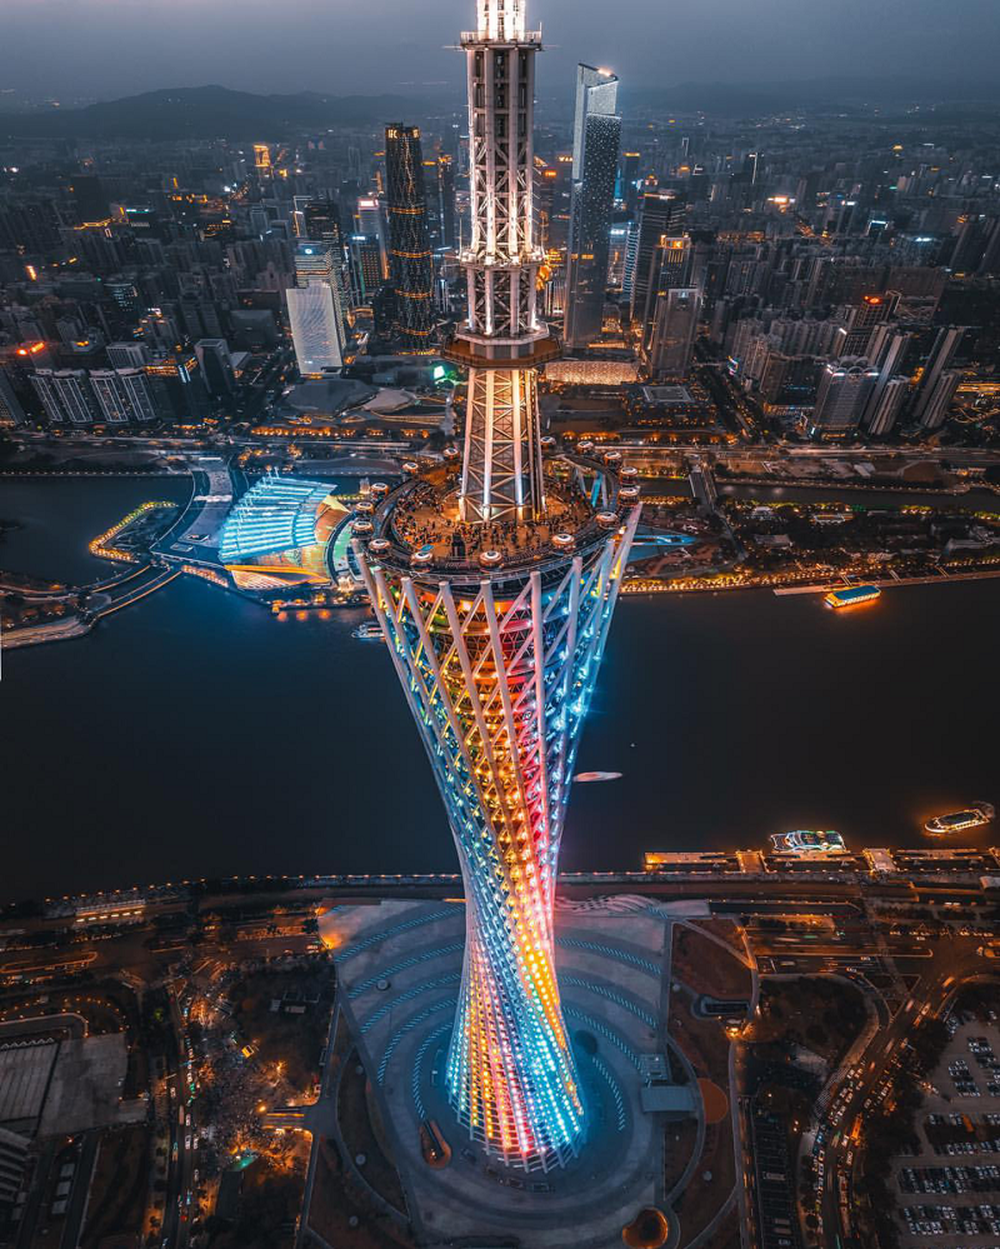 Tòa nhà chọc trời được ví như siêu mẫu của Trung Quốc: Chiều cao và độ chịu chi đều hàng khủng, ngỡ ngàng nhất là loạt kỷ lục khiến nhiều người khó thở - Ảnh 9.